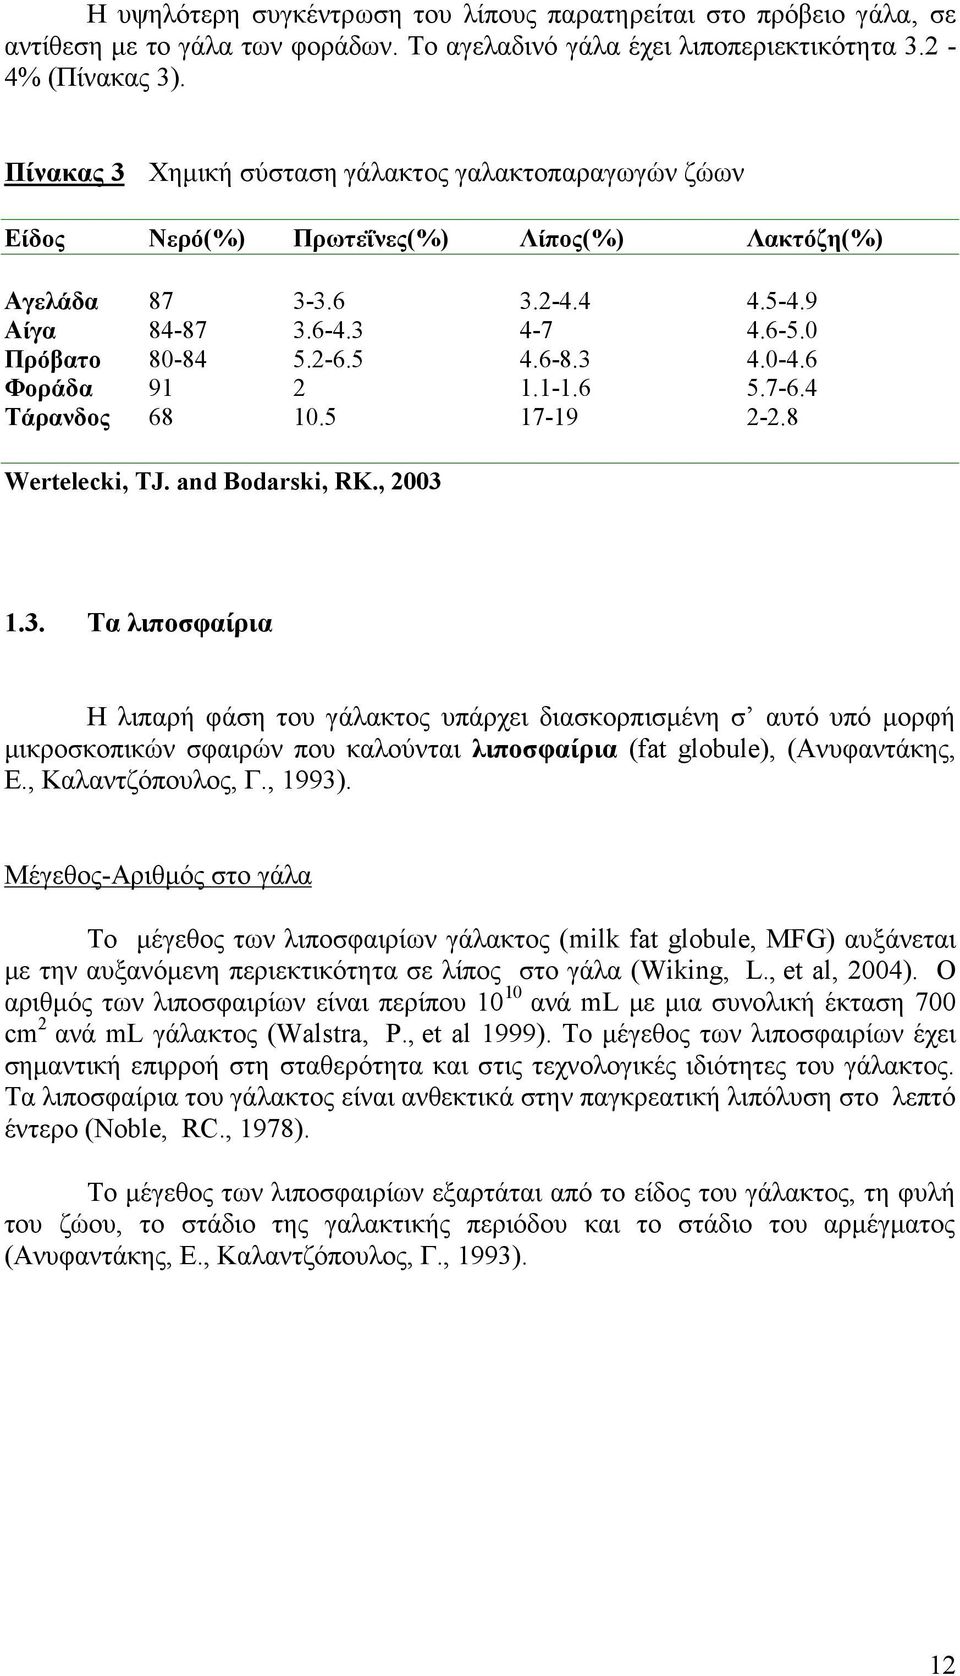 6 Φοράδα 91 2 1.1-1.6 5.7-6.4 Τάρανδος 68 10.5 17-19 2-2.8 Wertelecki, TJ. and Bodarski, RK., 2003 